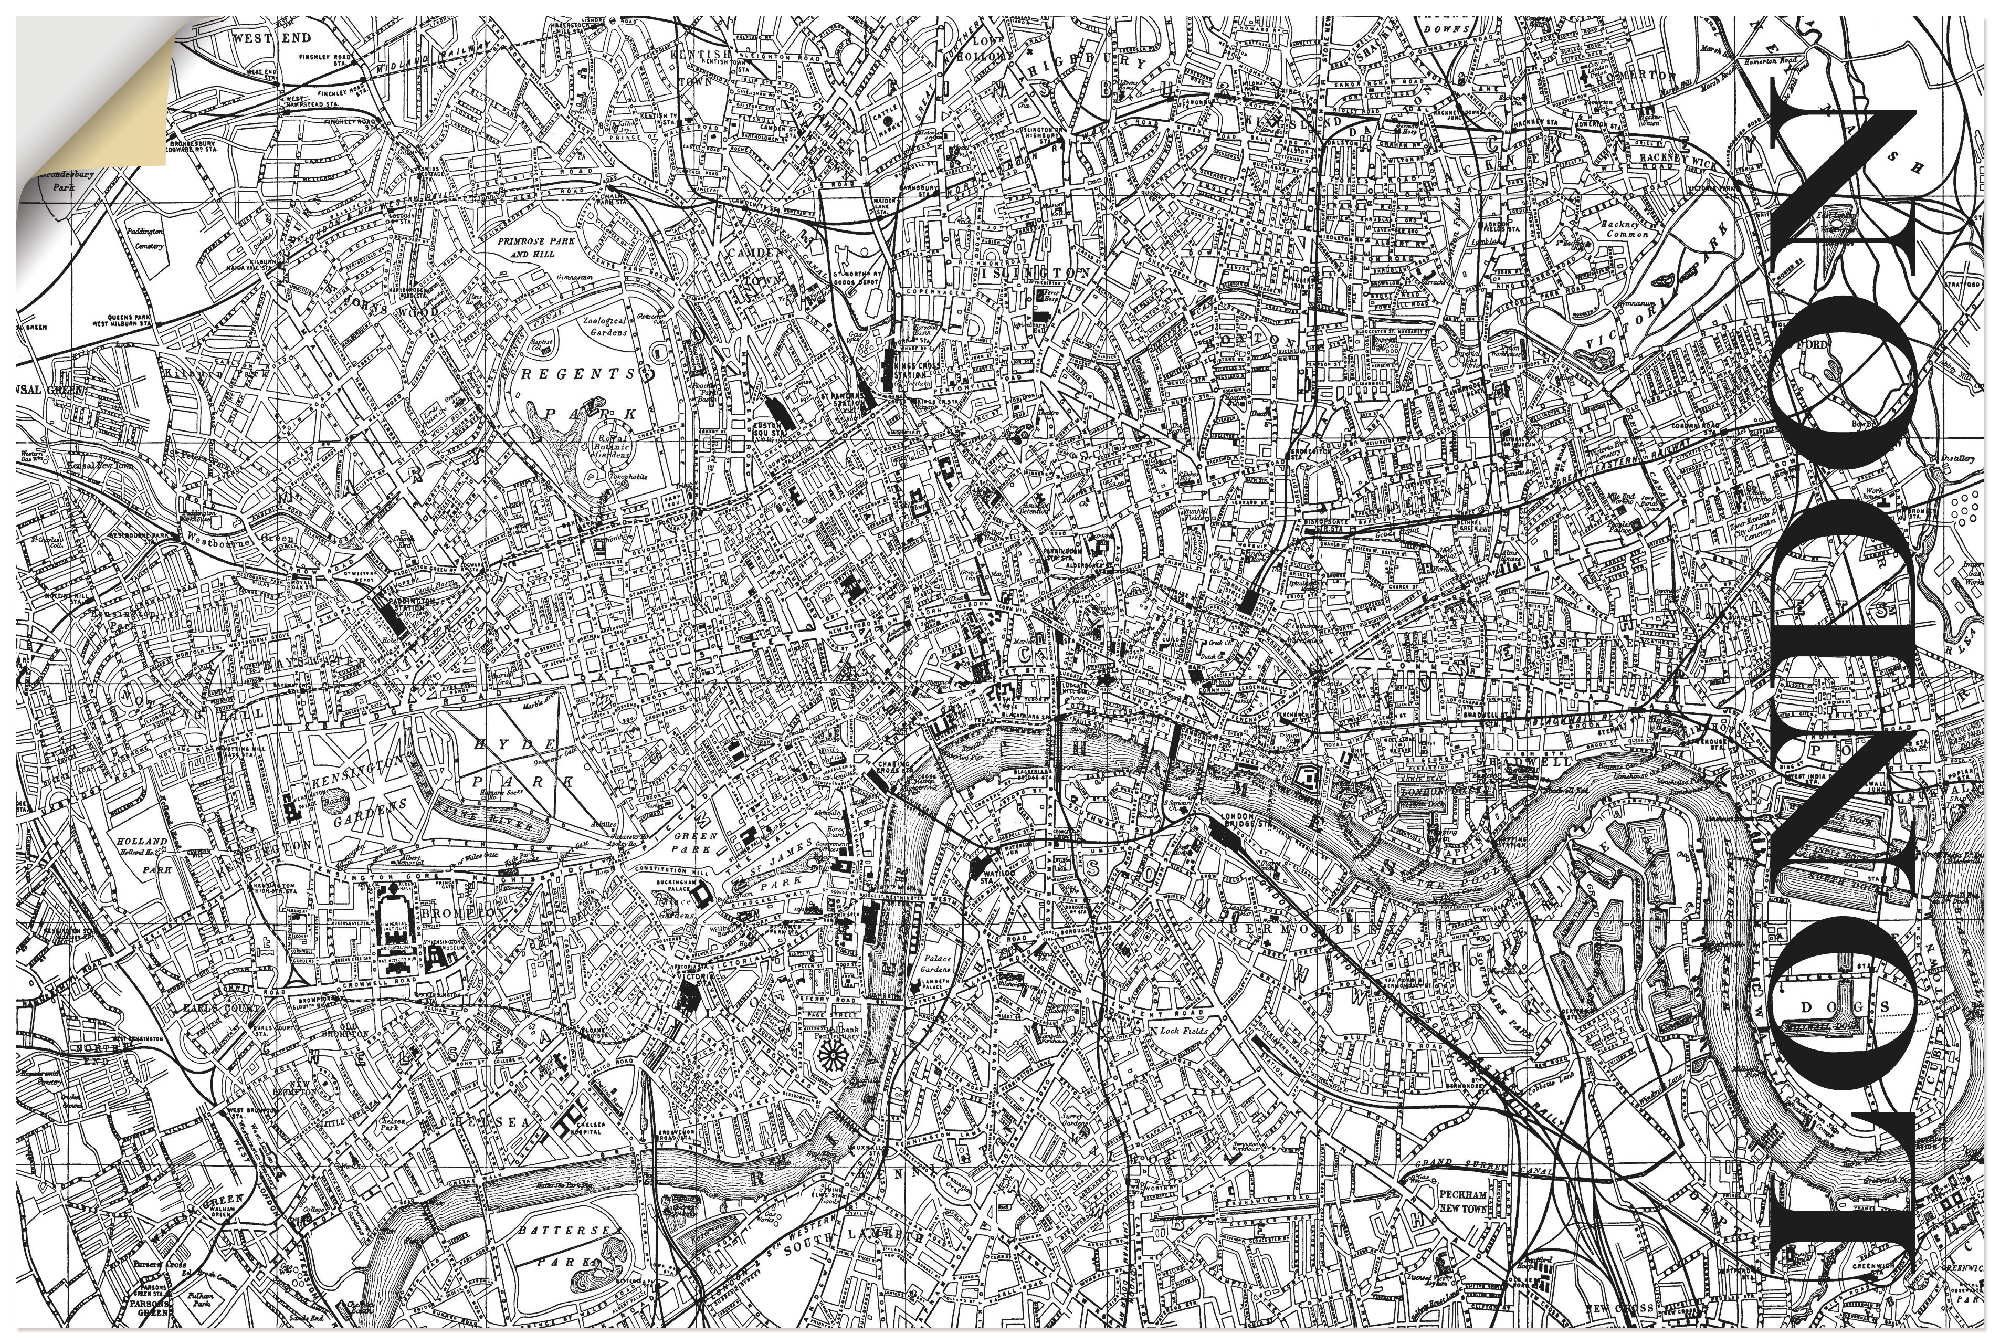 Artland Artprint Londen Kaart straten kaart in vele afmetingen & productsoorten - artprint van aluminium / artprint voor buiten, artprint op linnen, poster, muursticker / wandfolie